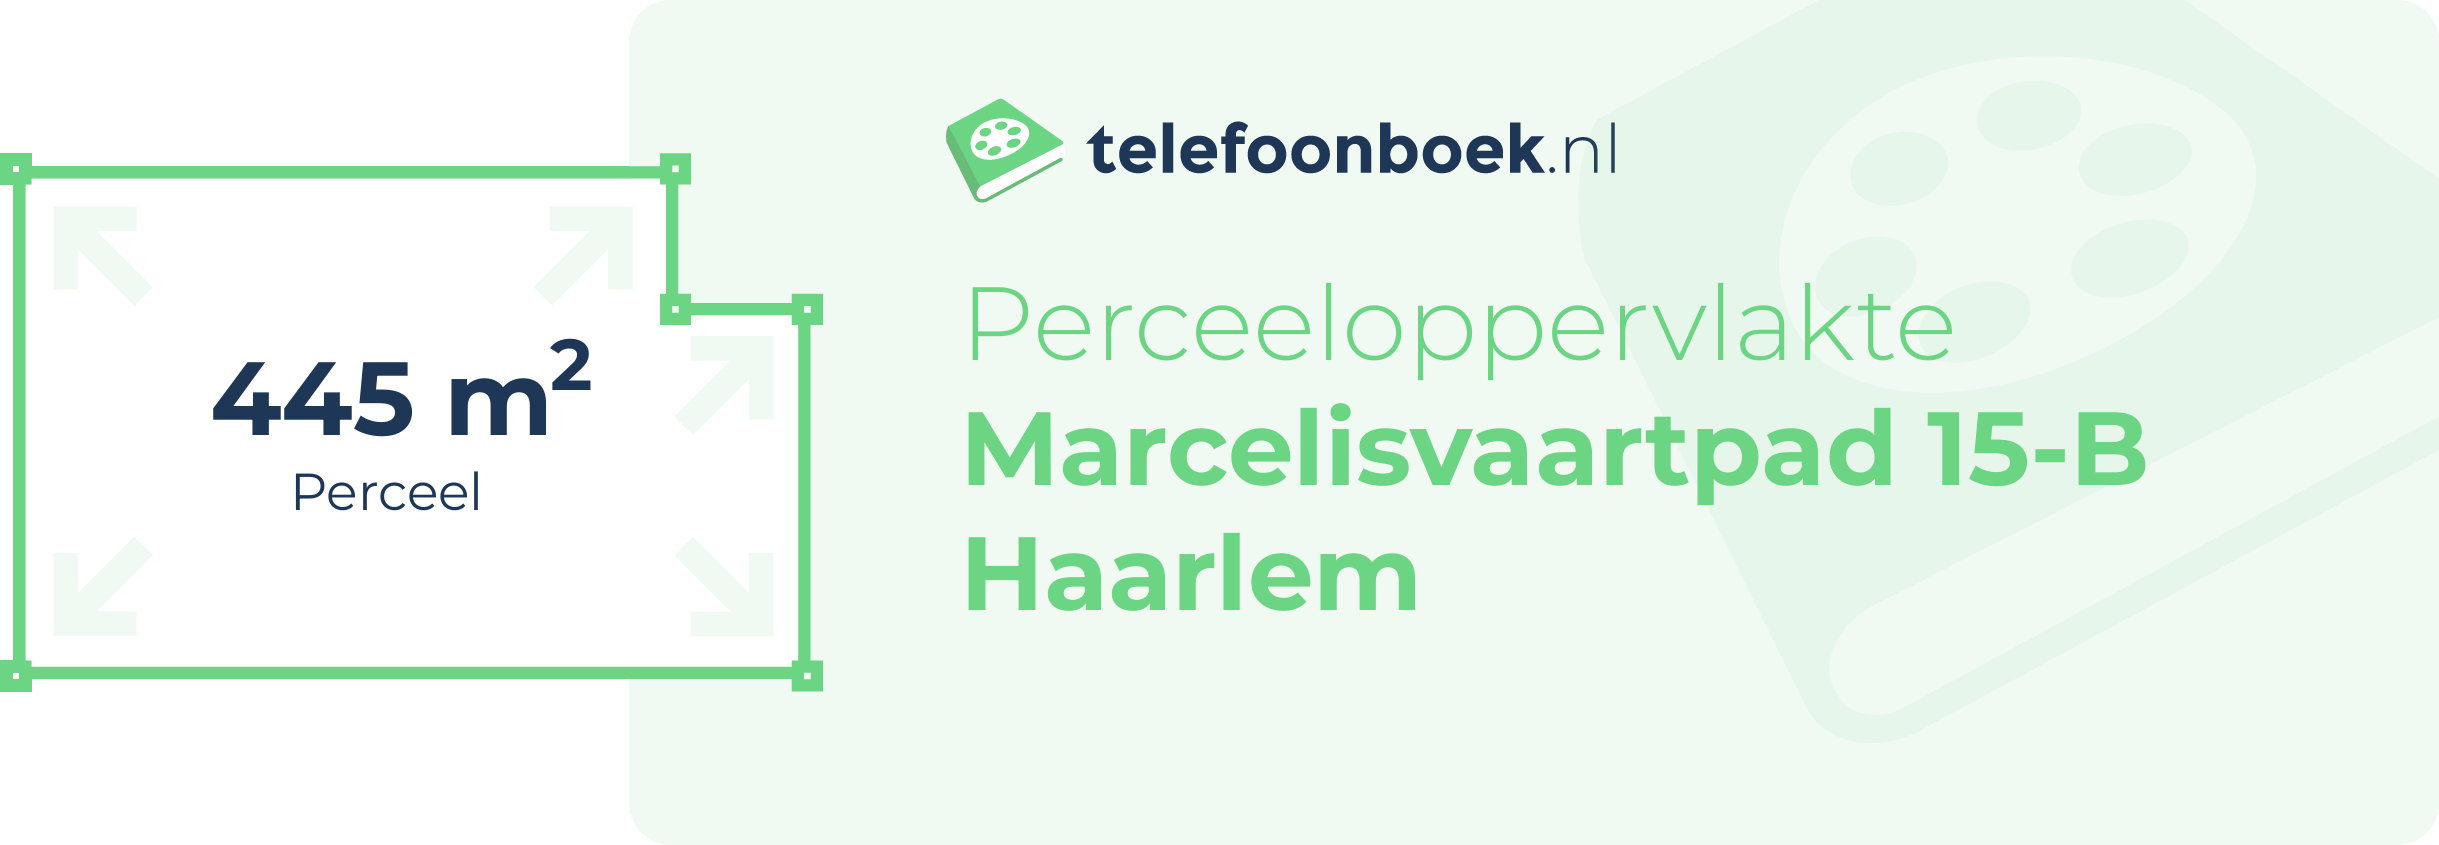 Perceeloppervlakte Marcelisvaartpad 15-B Haarlem